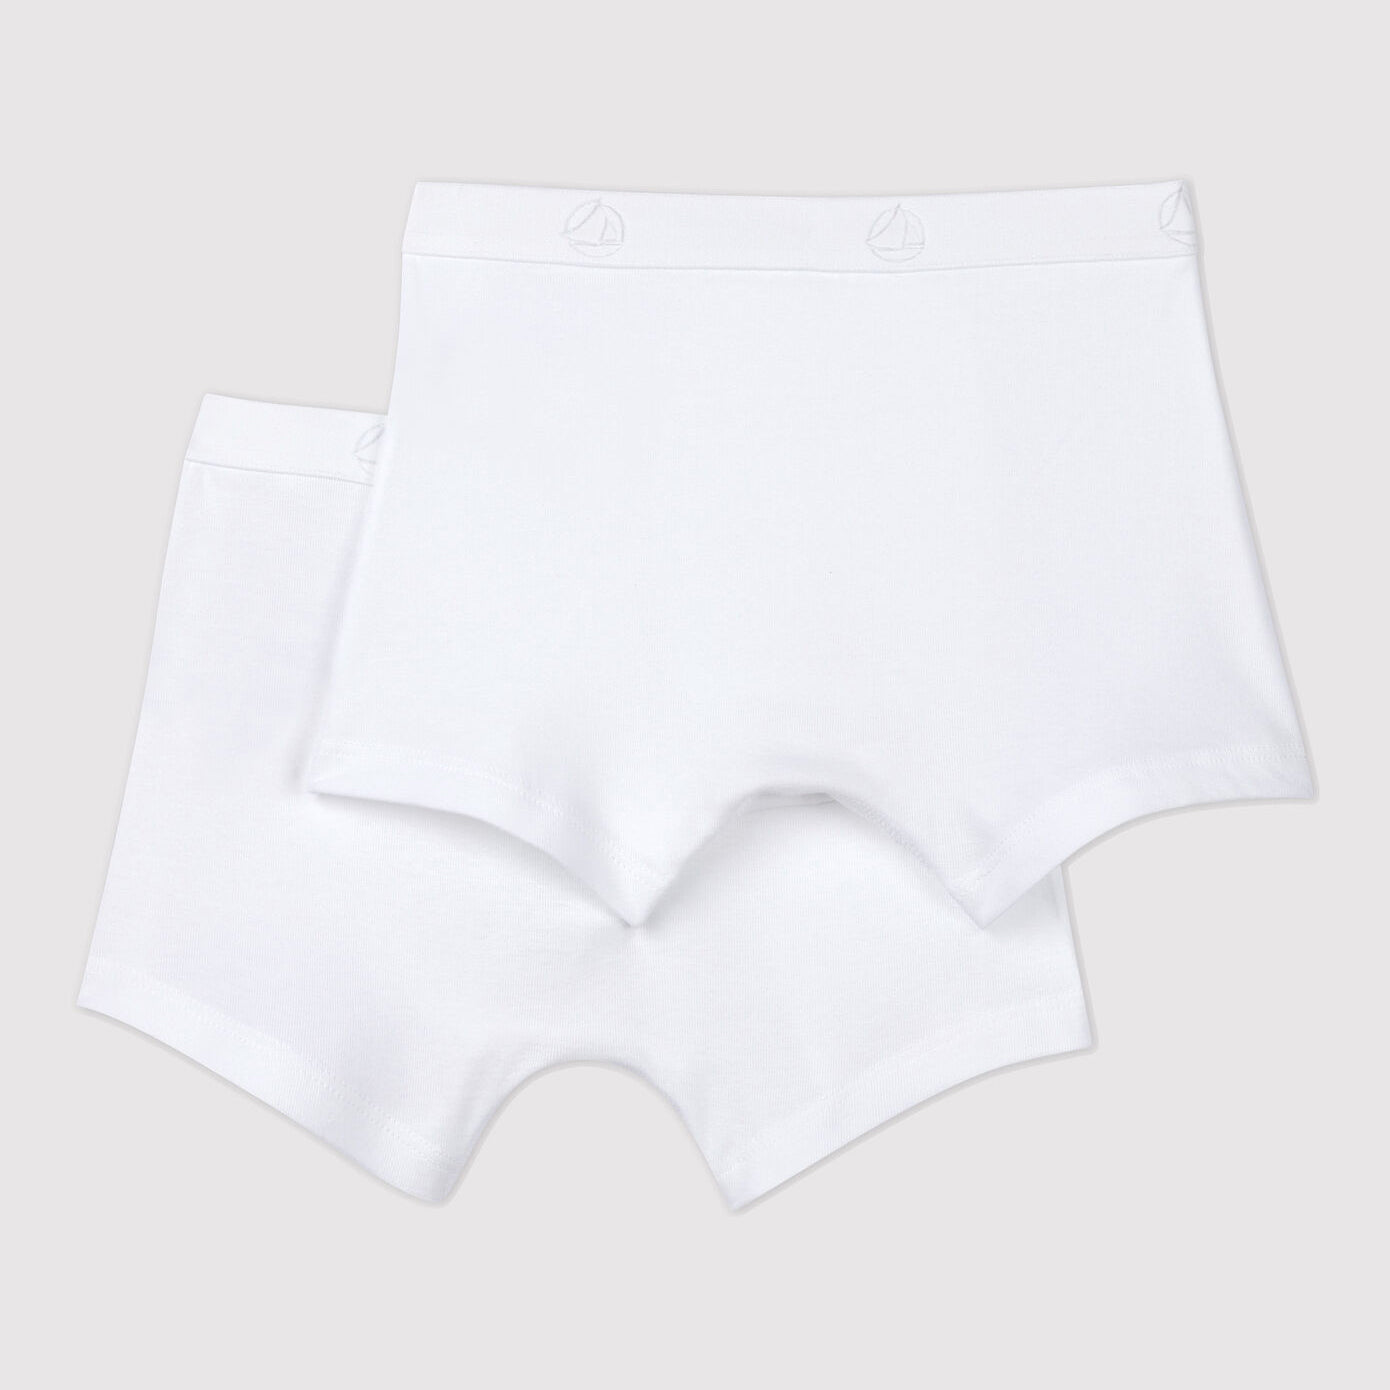 Boys White Cotton Underwear Set(2 Pack)